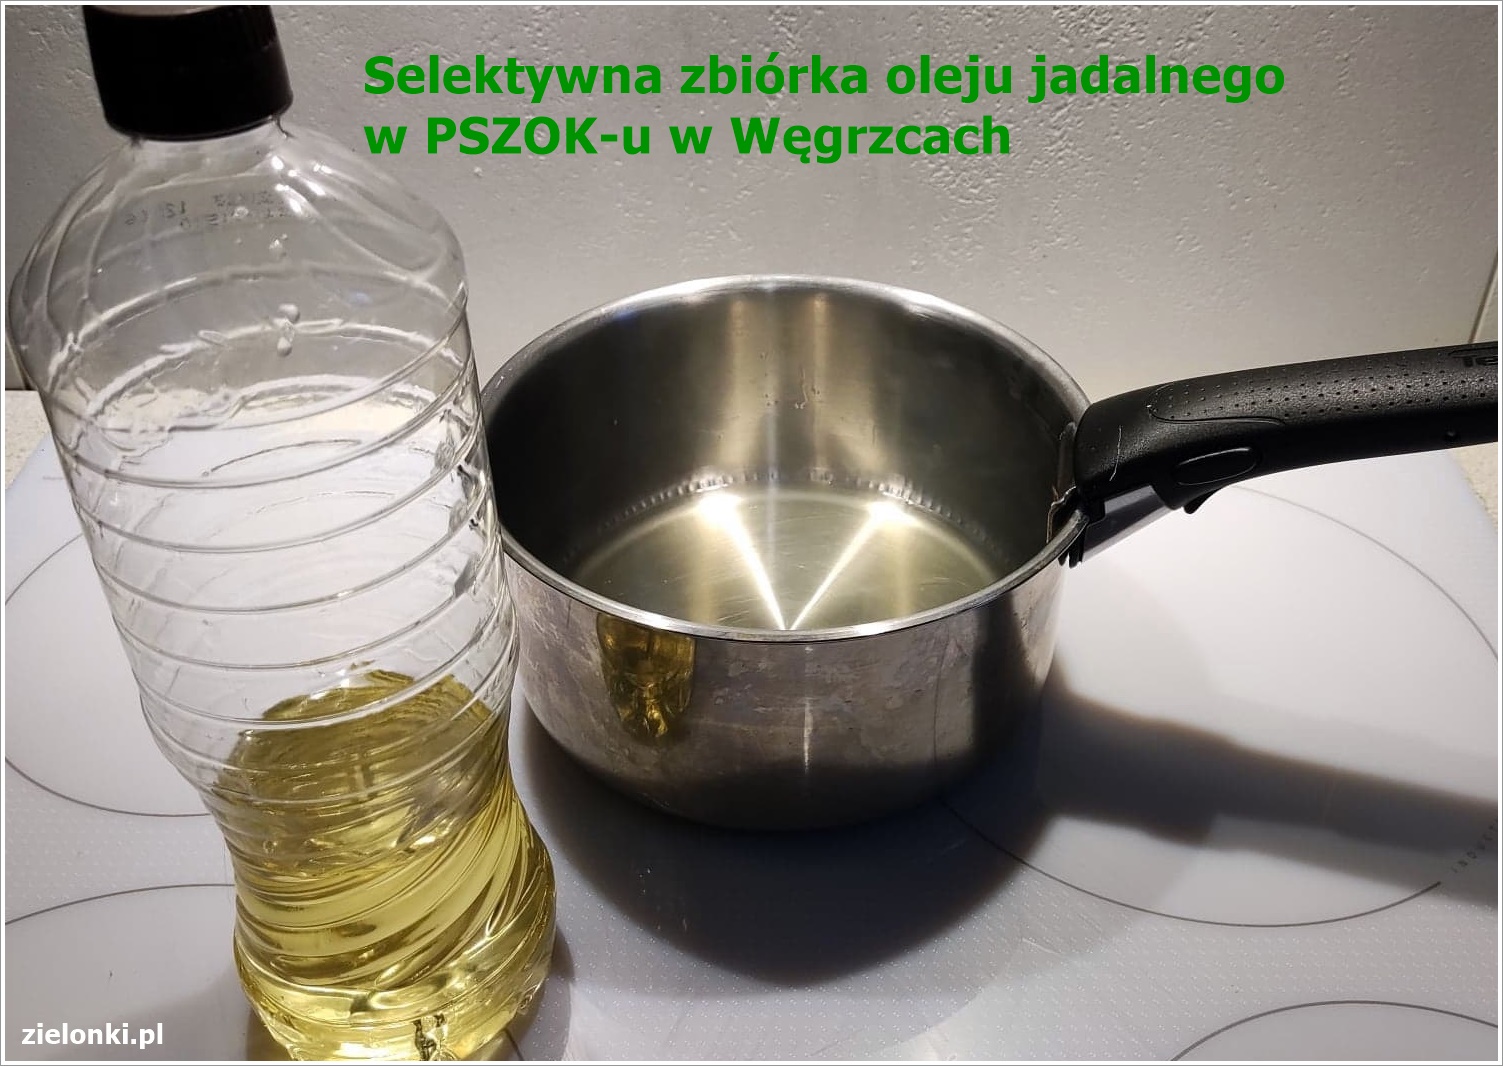 Segreguj olej! Selektywna zbiórka oleju jadalnego w PSZOK-u w Węgrzcach